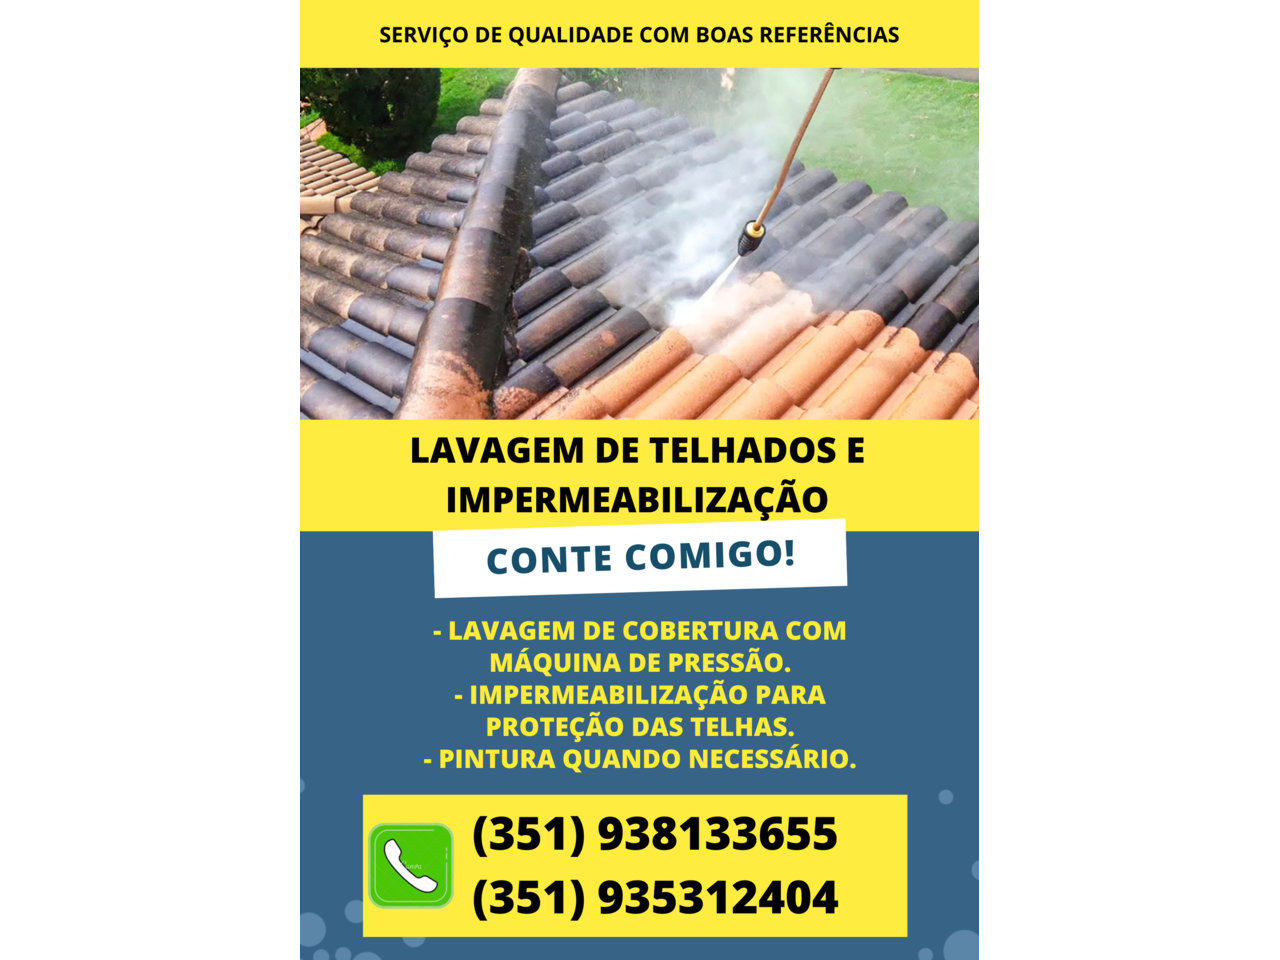 Limpeza de telhados e impermeabilização - 1